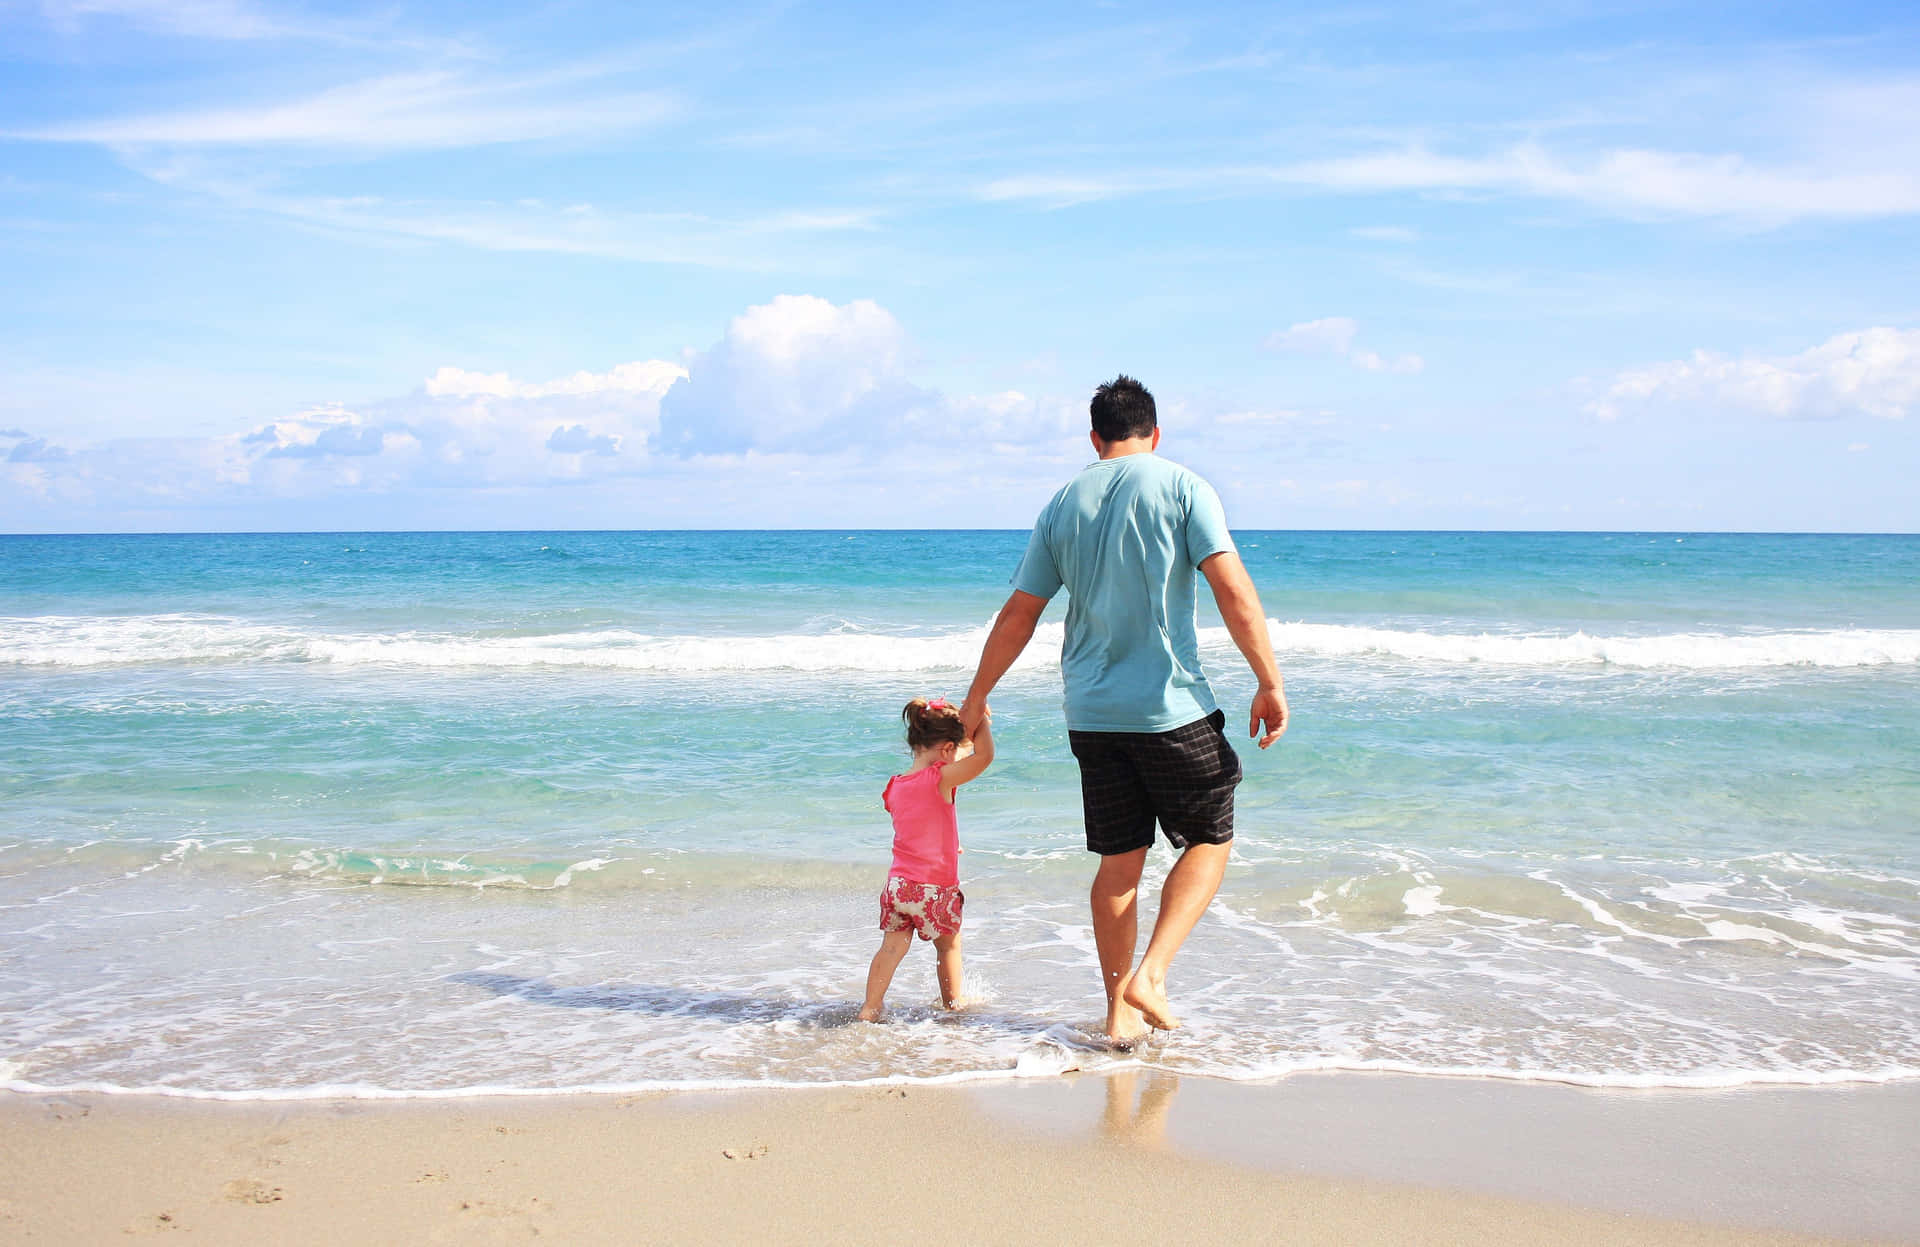 Padree Figlia In Spiaggia Con Cielo Azzurro Immagine.